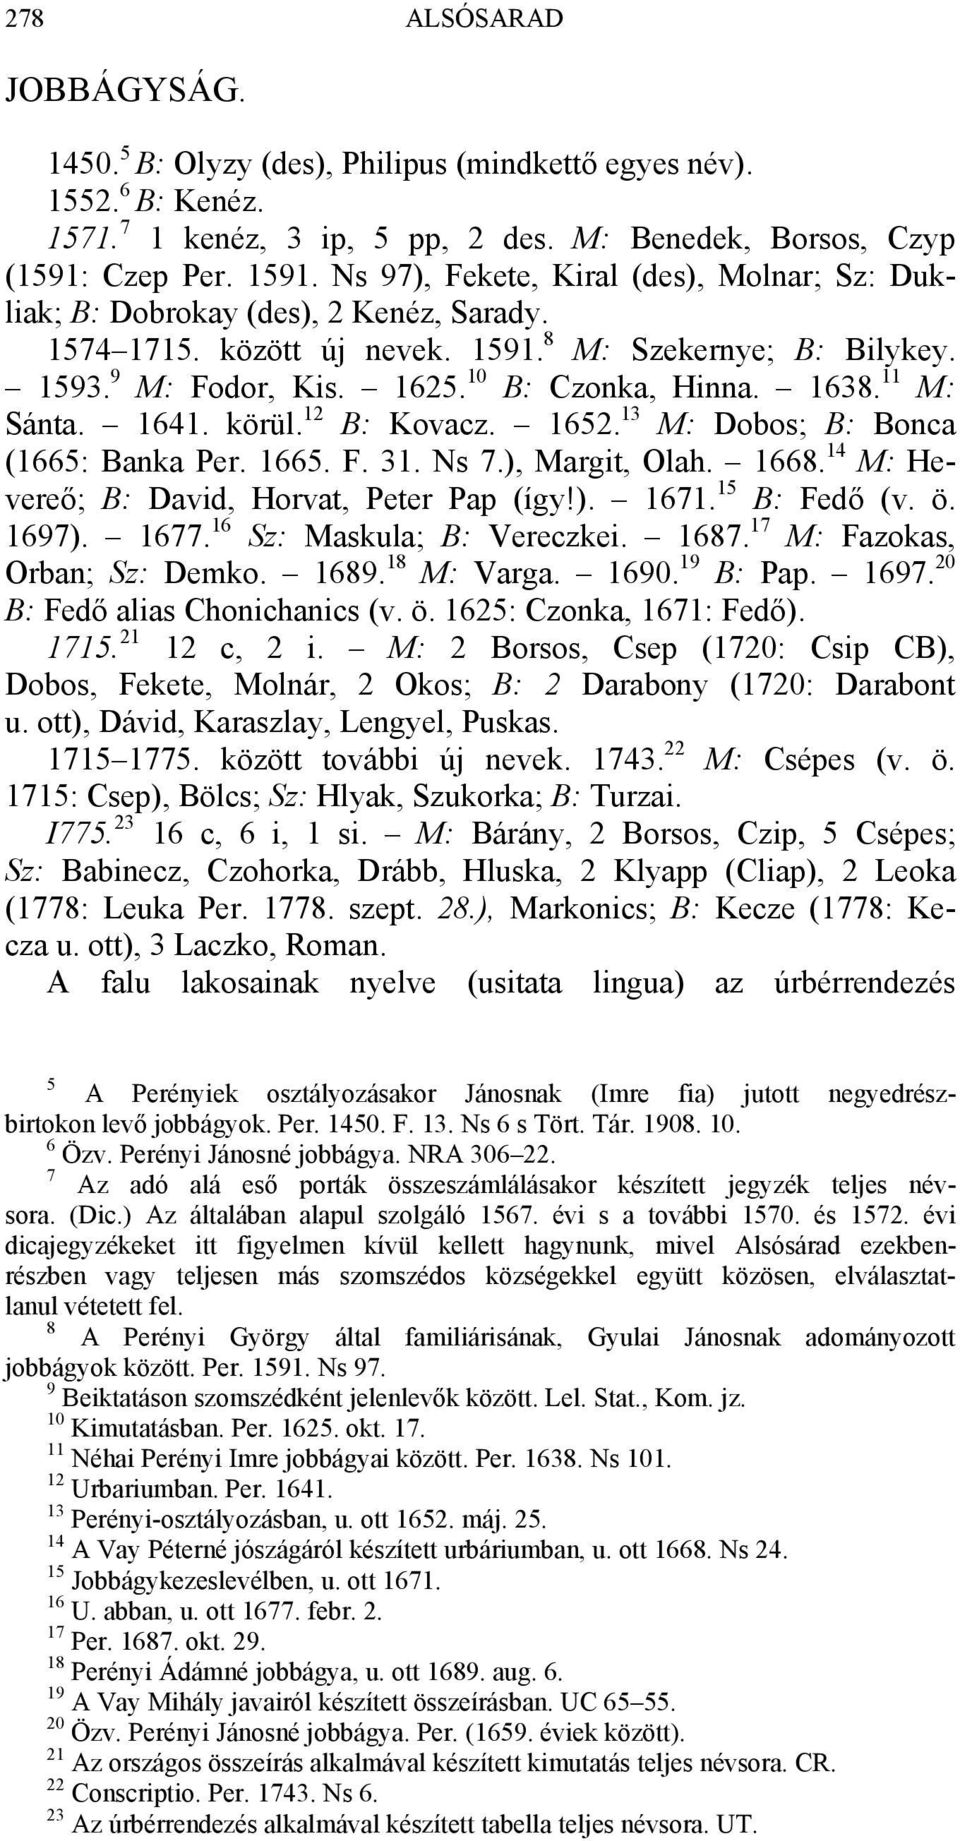 1638. 11 M: Sánta. 1641. körül. 12 B: Kovacz. 1652. 13 M: Dobos; B: Bonca (1665: Banka Per. 1665. F. 31. Ns 7.), Margit, Olah. 1668. 14 M: Hevereő; B: David, Horvat, Peter Pap (így!). 1671.